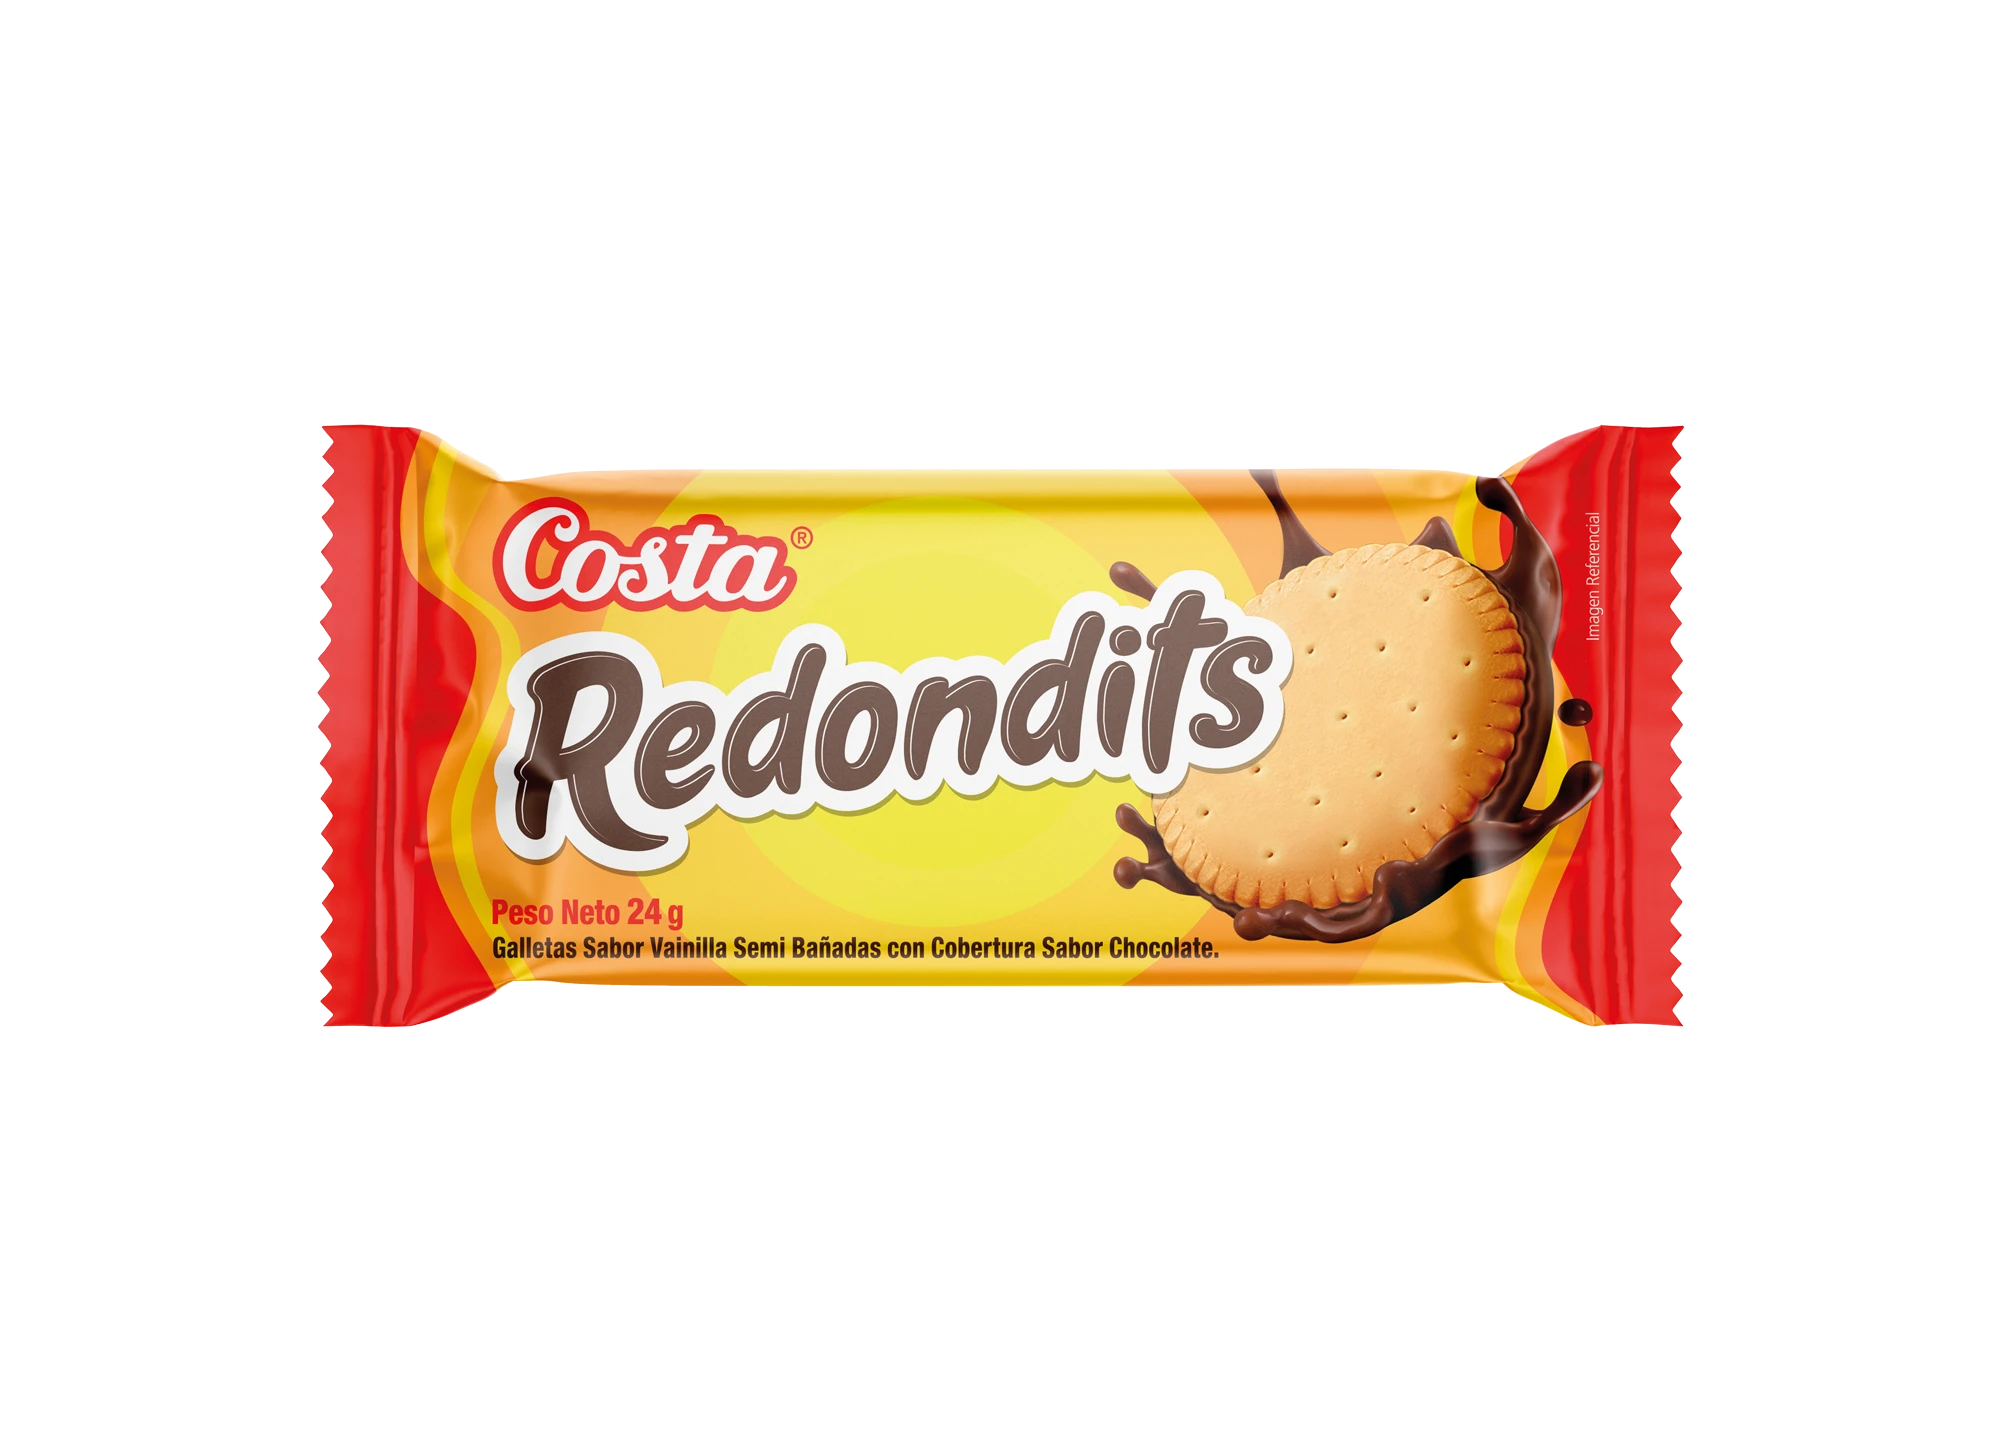 Redondits